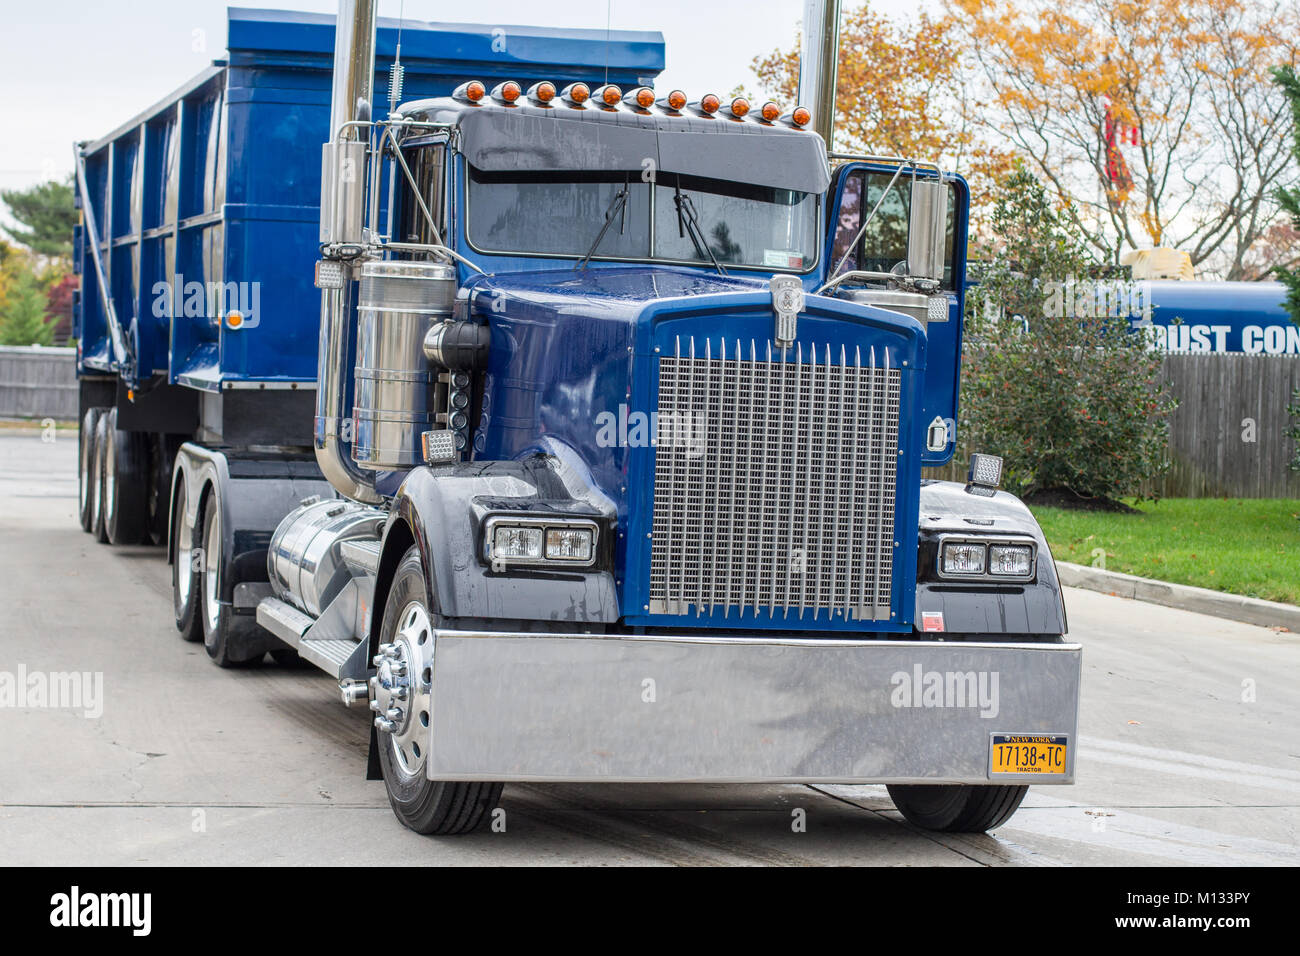 Motortruck blu sulla strada dopo il lavaggio, Long Island, New York, NY, Stati Uniti d'America Foto Stock